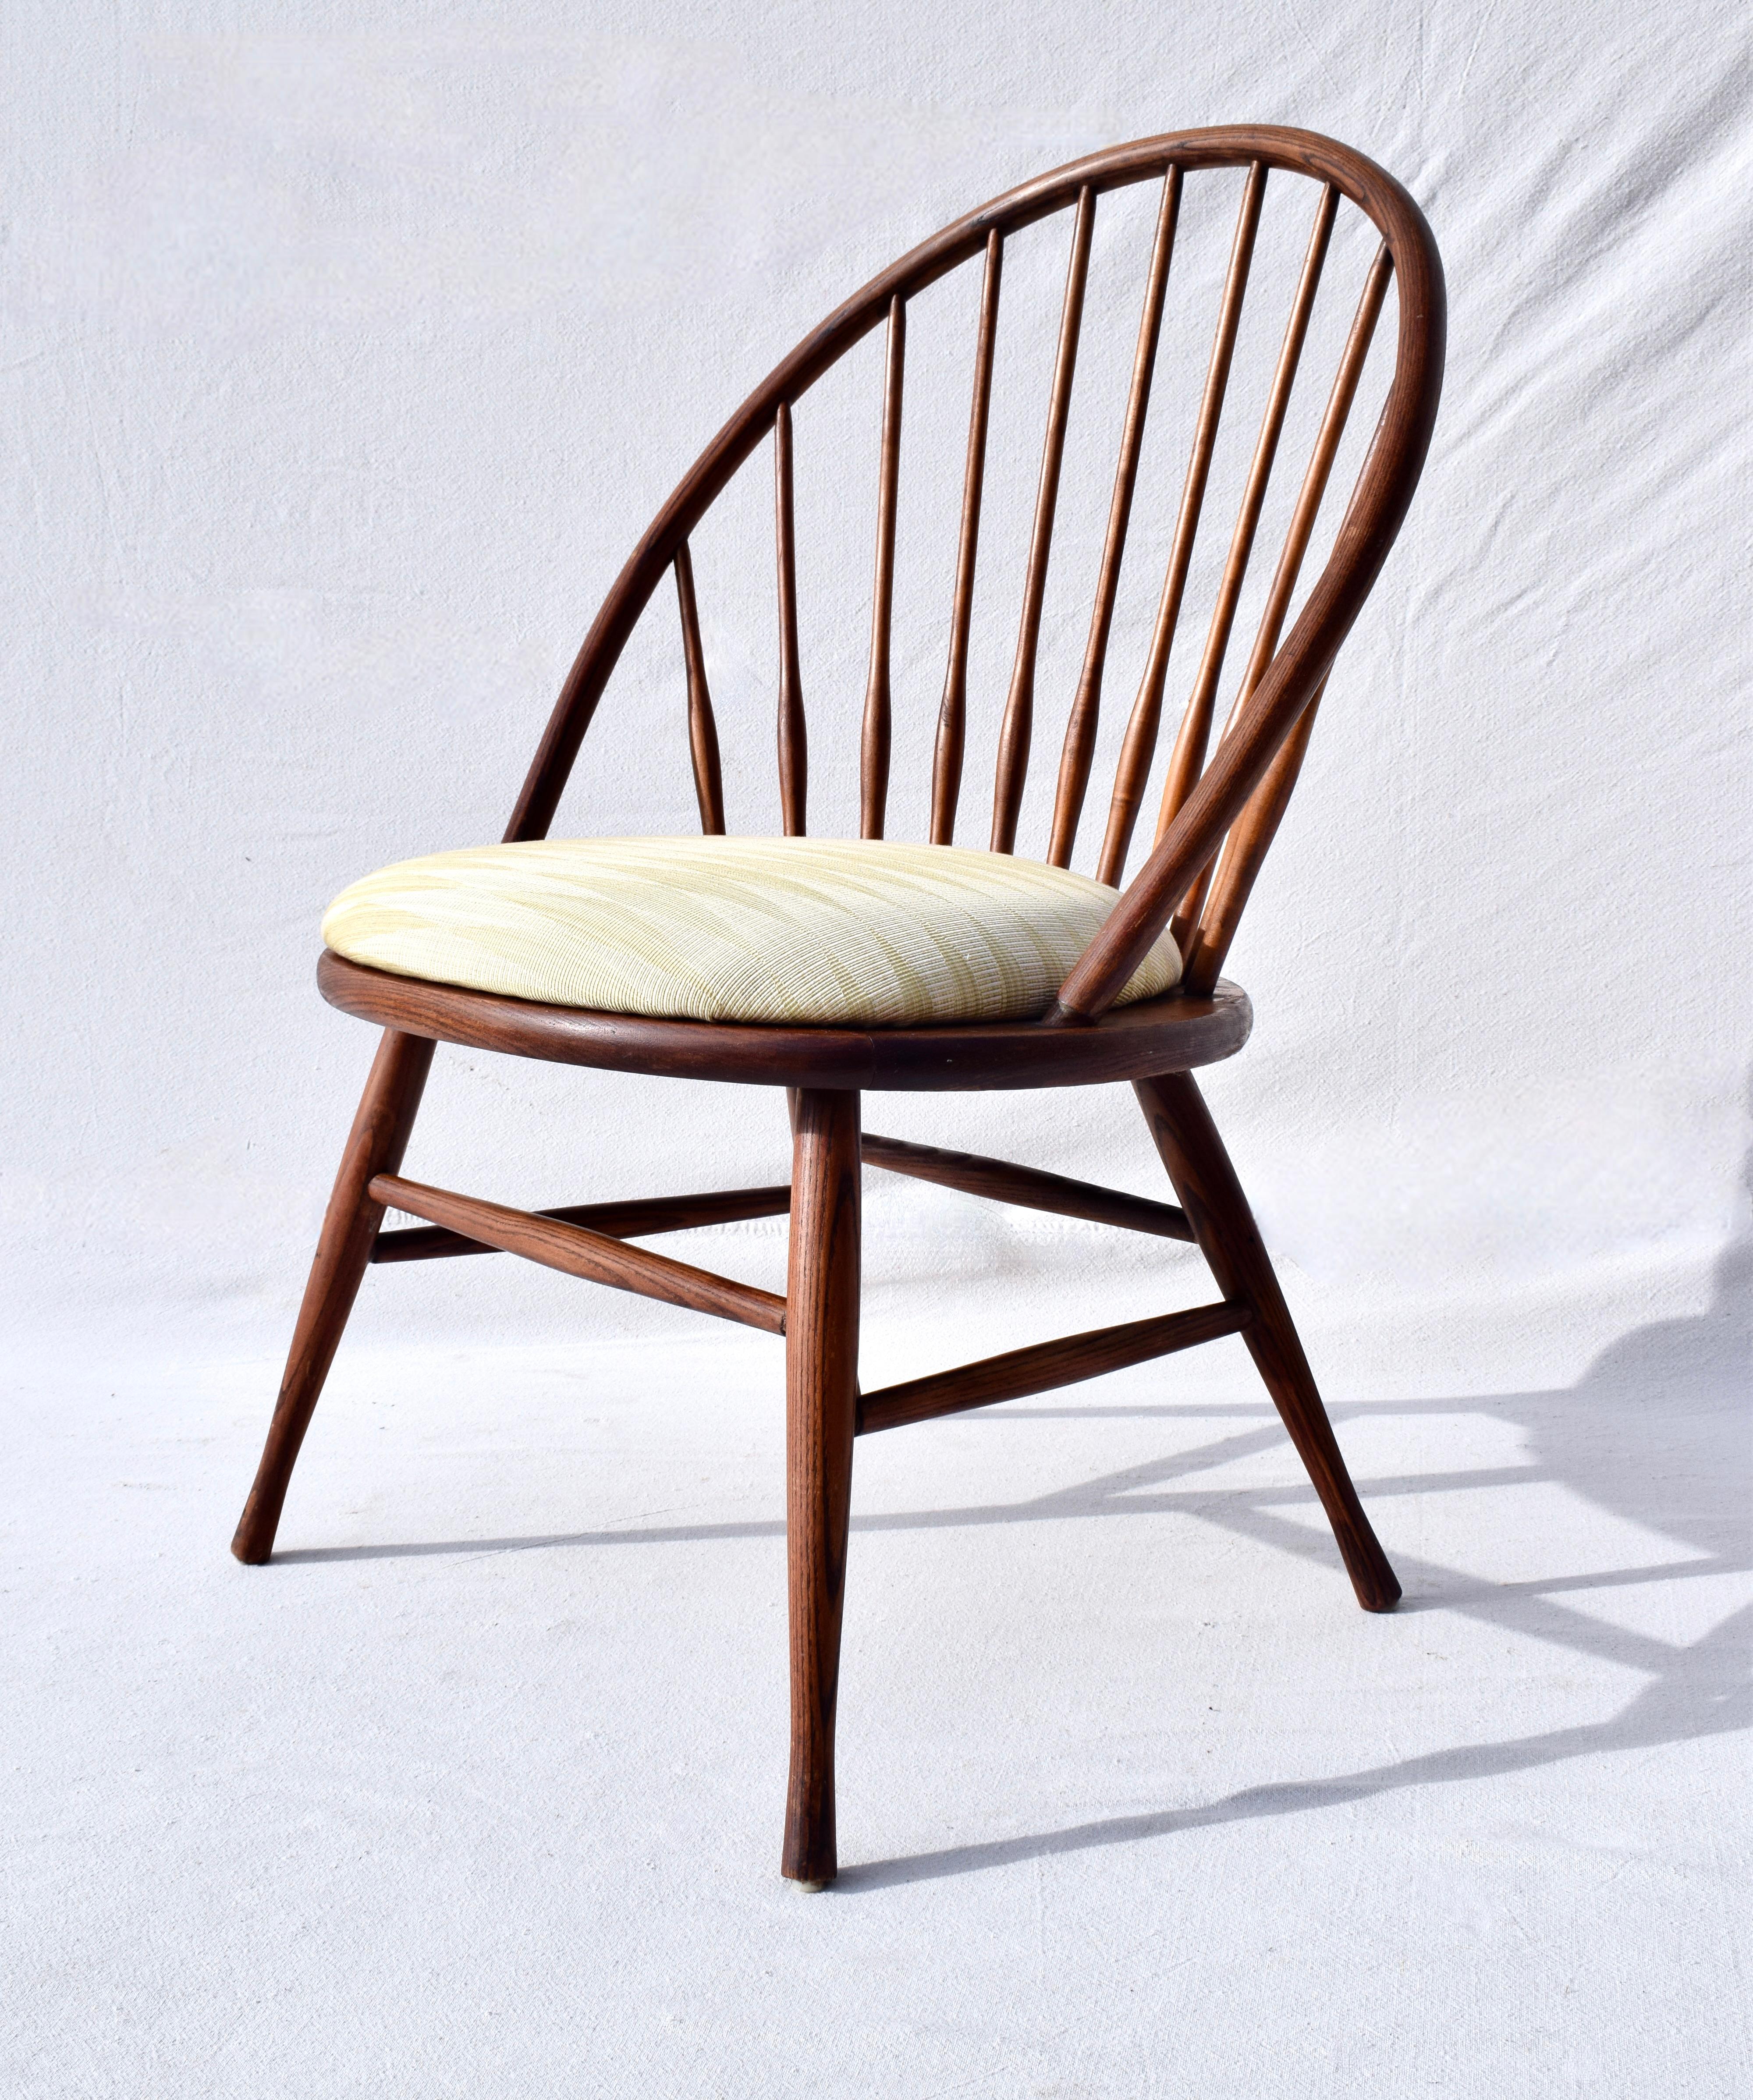 Une interprétation moderne de la forme classique de la chaise Windsor, en chêne massif, fabriquée en Suède. Très propre, état d'origine nouvellement tapissé avec des proportions qui fonctionnent bien dans une variété de paramètres., prêt à l'emploi.